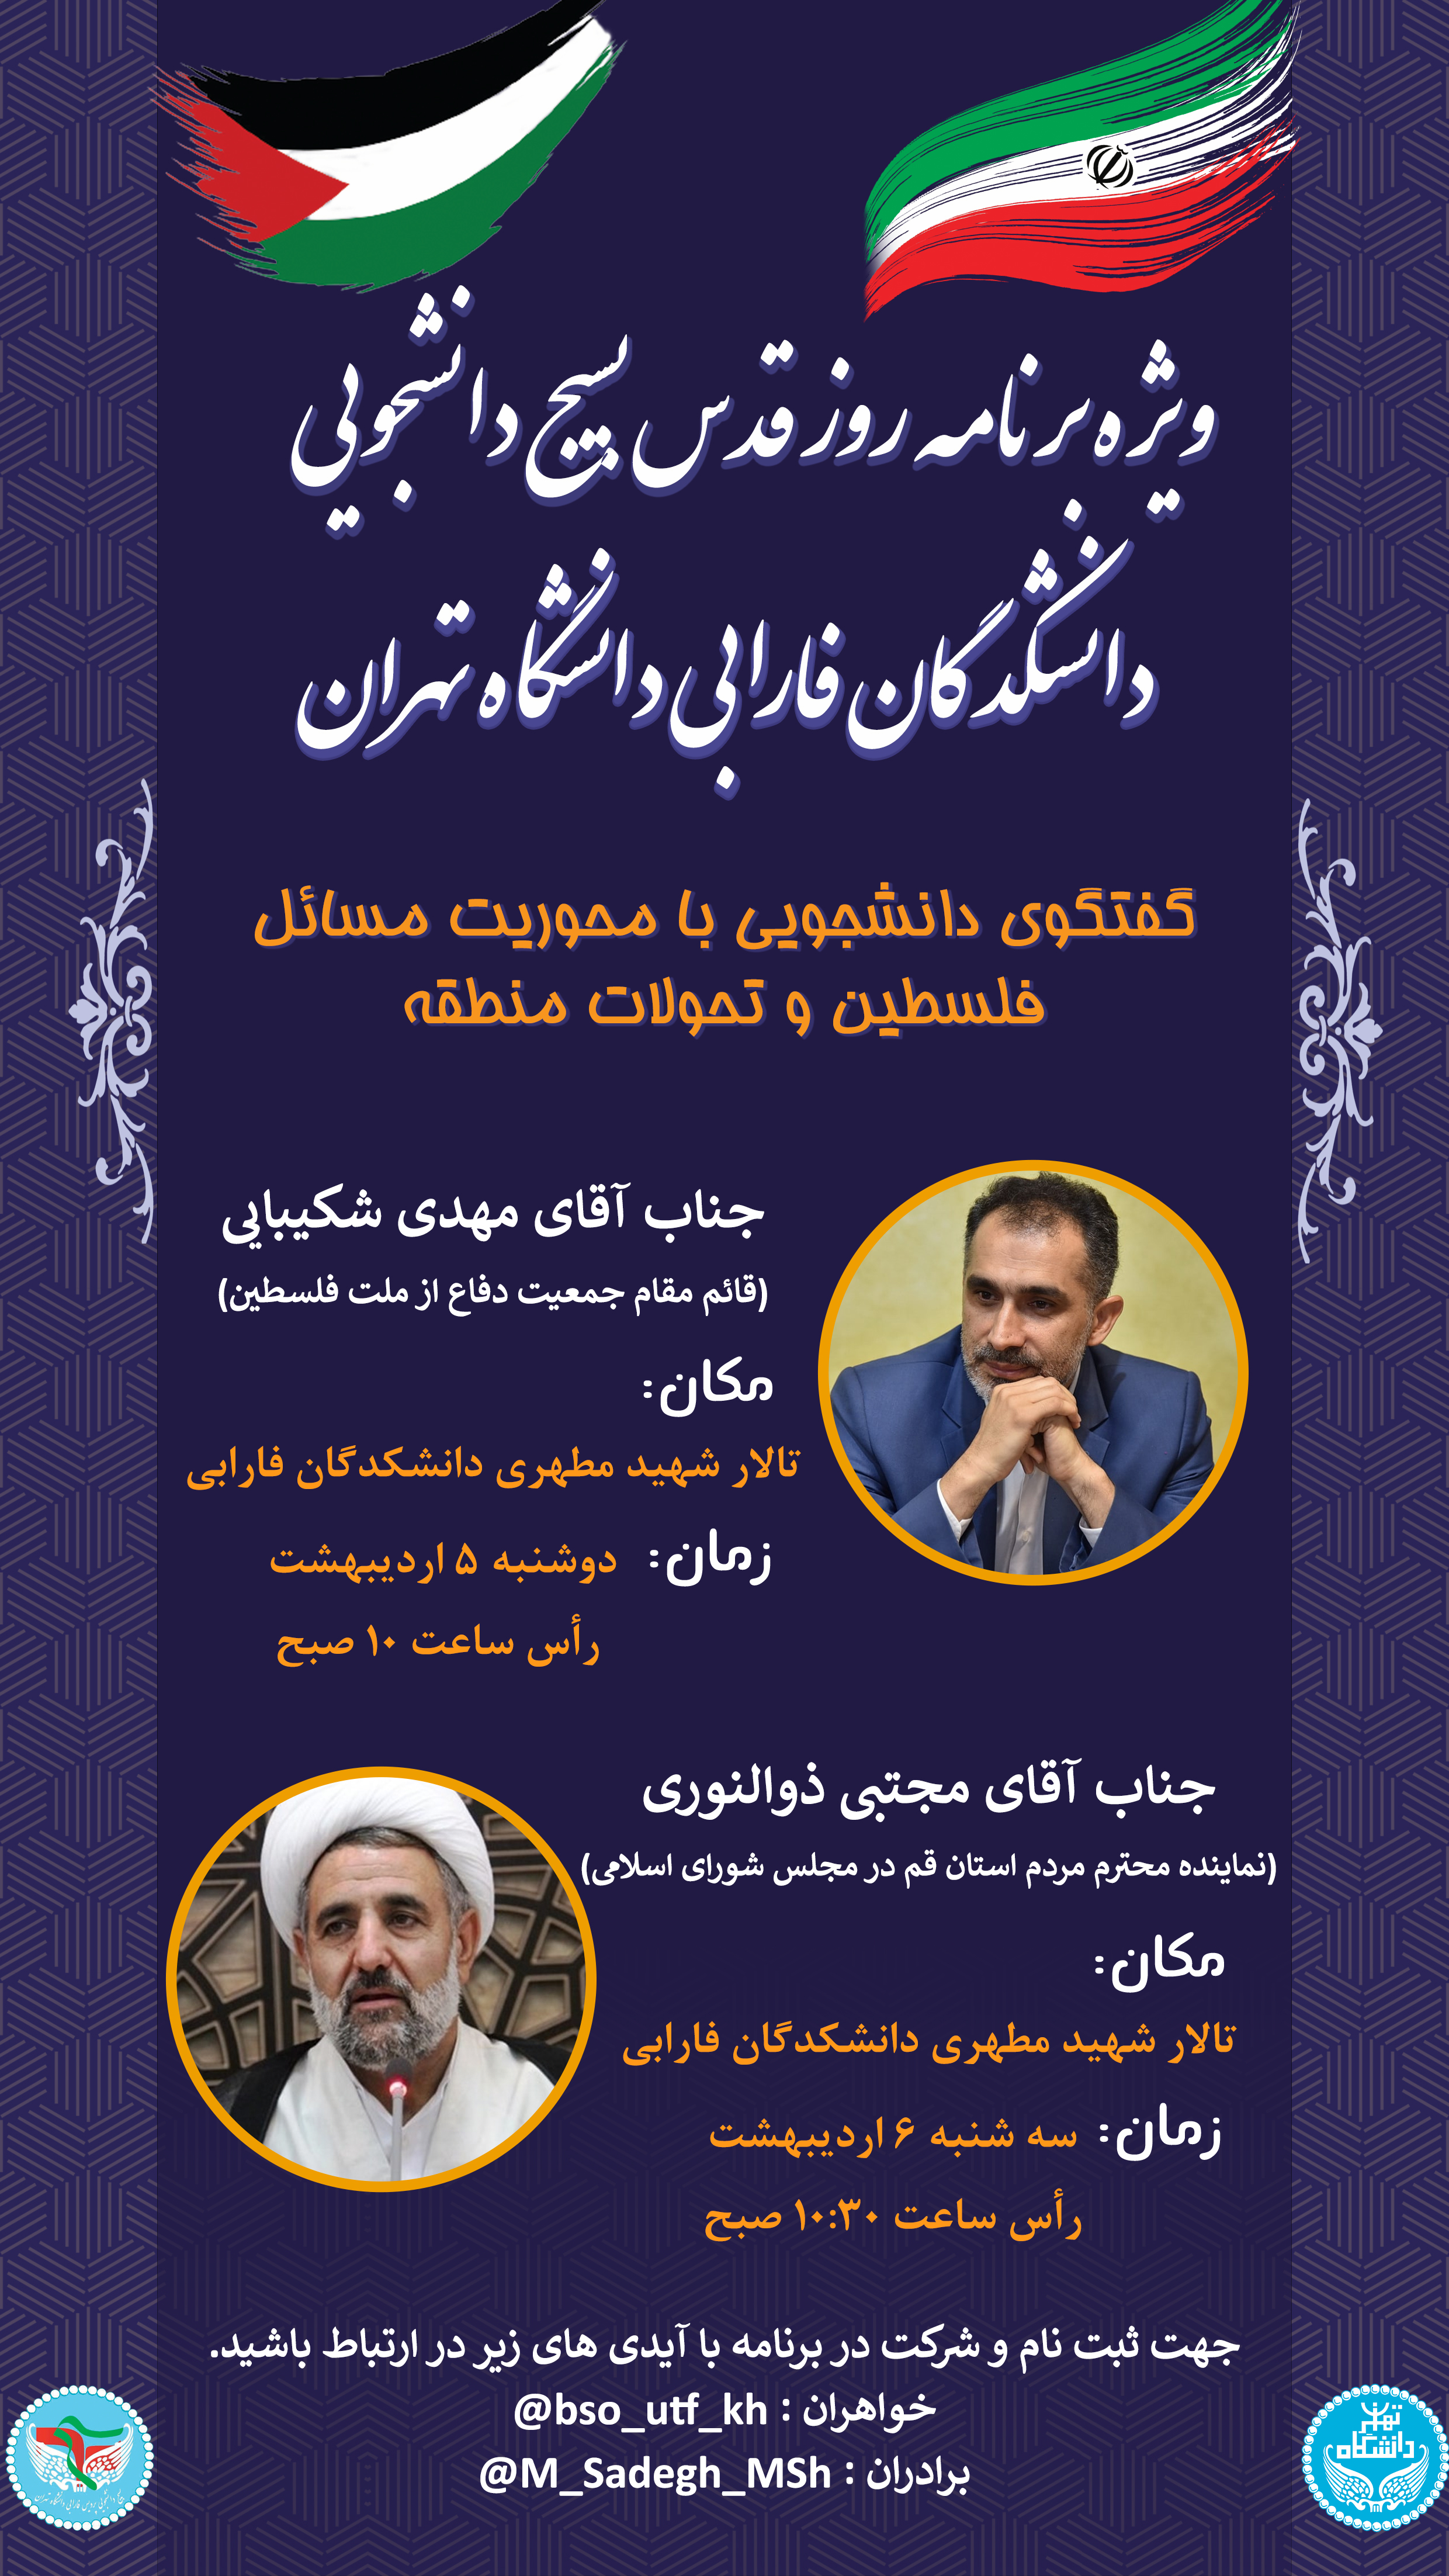 ویژه برنامه روز قدس در دانشکدگان فارابی دانشگاه تهران